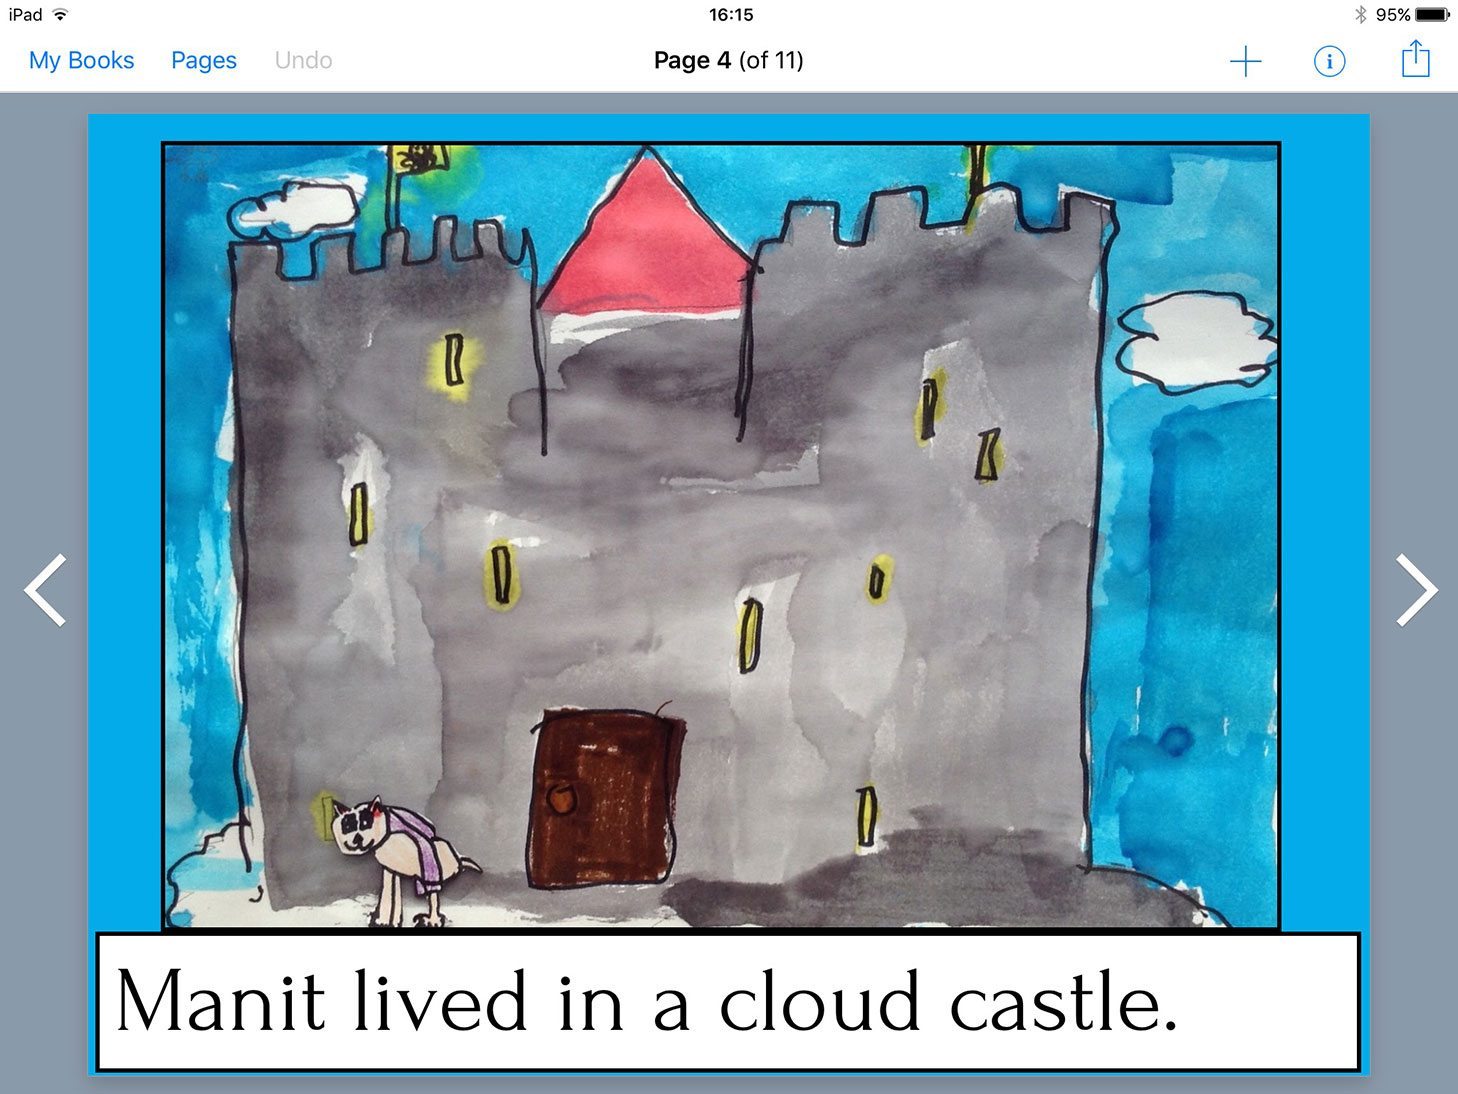 Manit's Castle